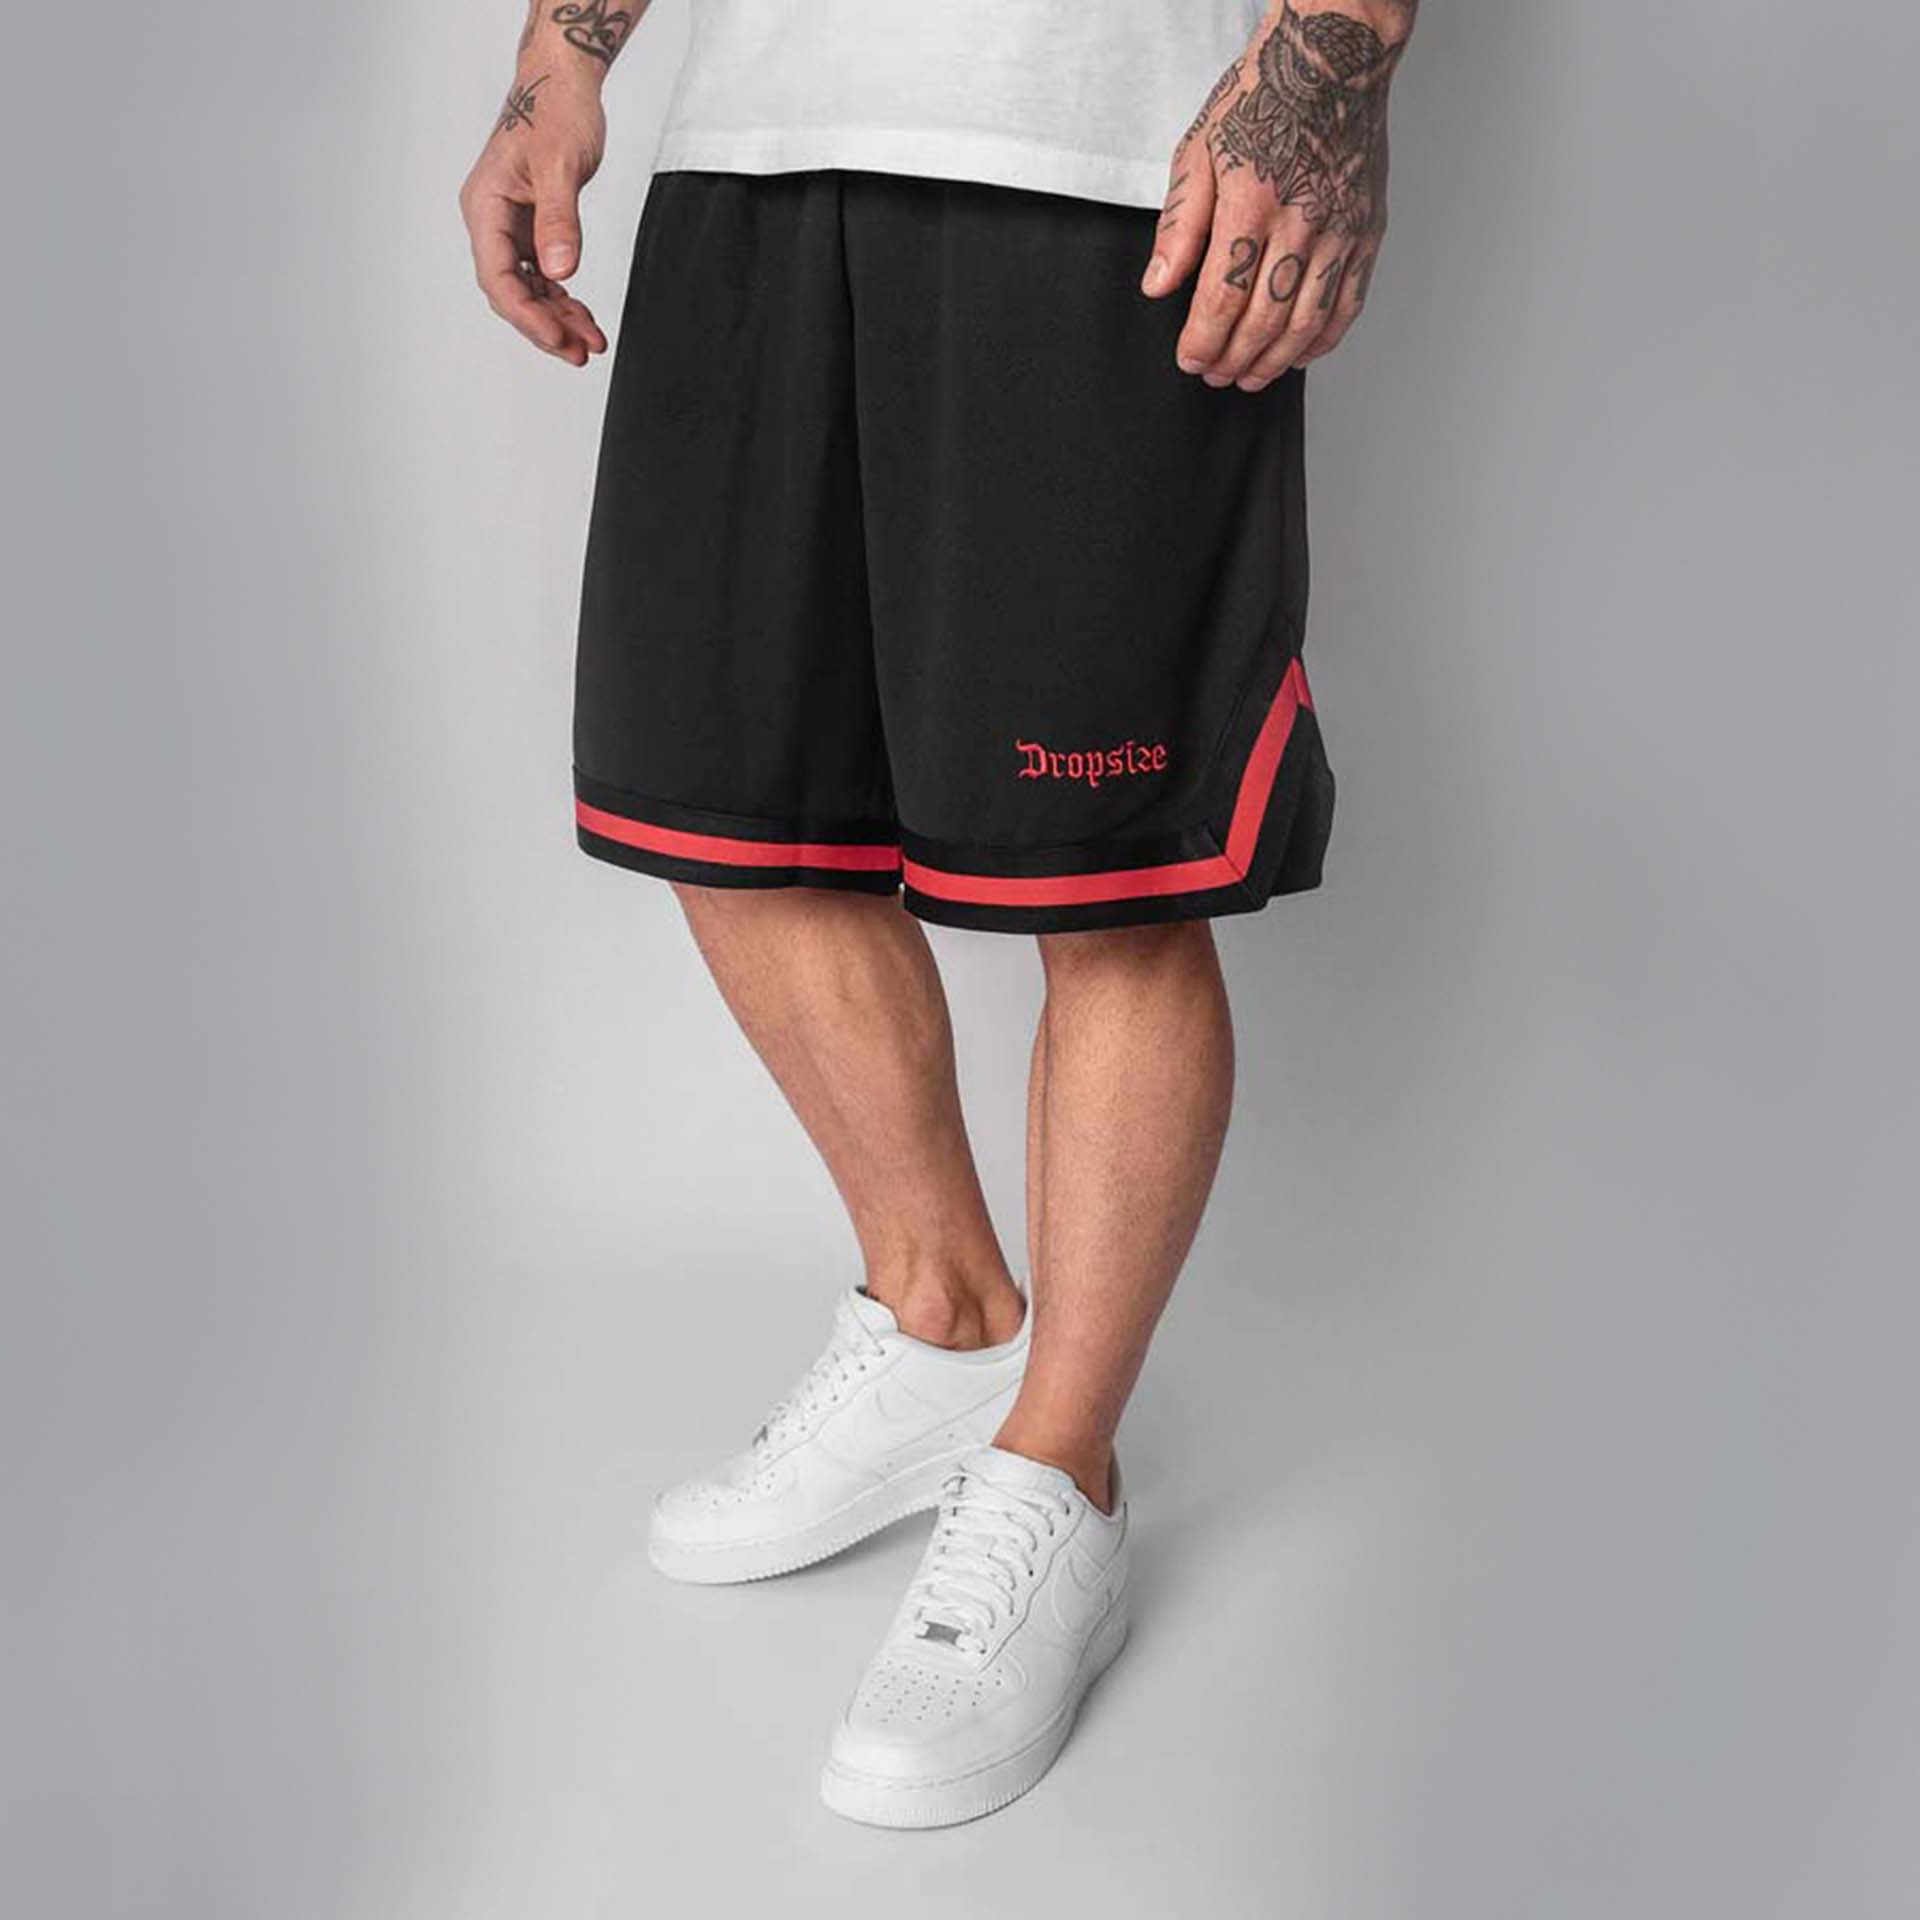 Dropsize Logo Mesh Shorts Black/Red